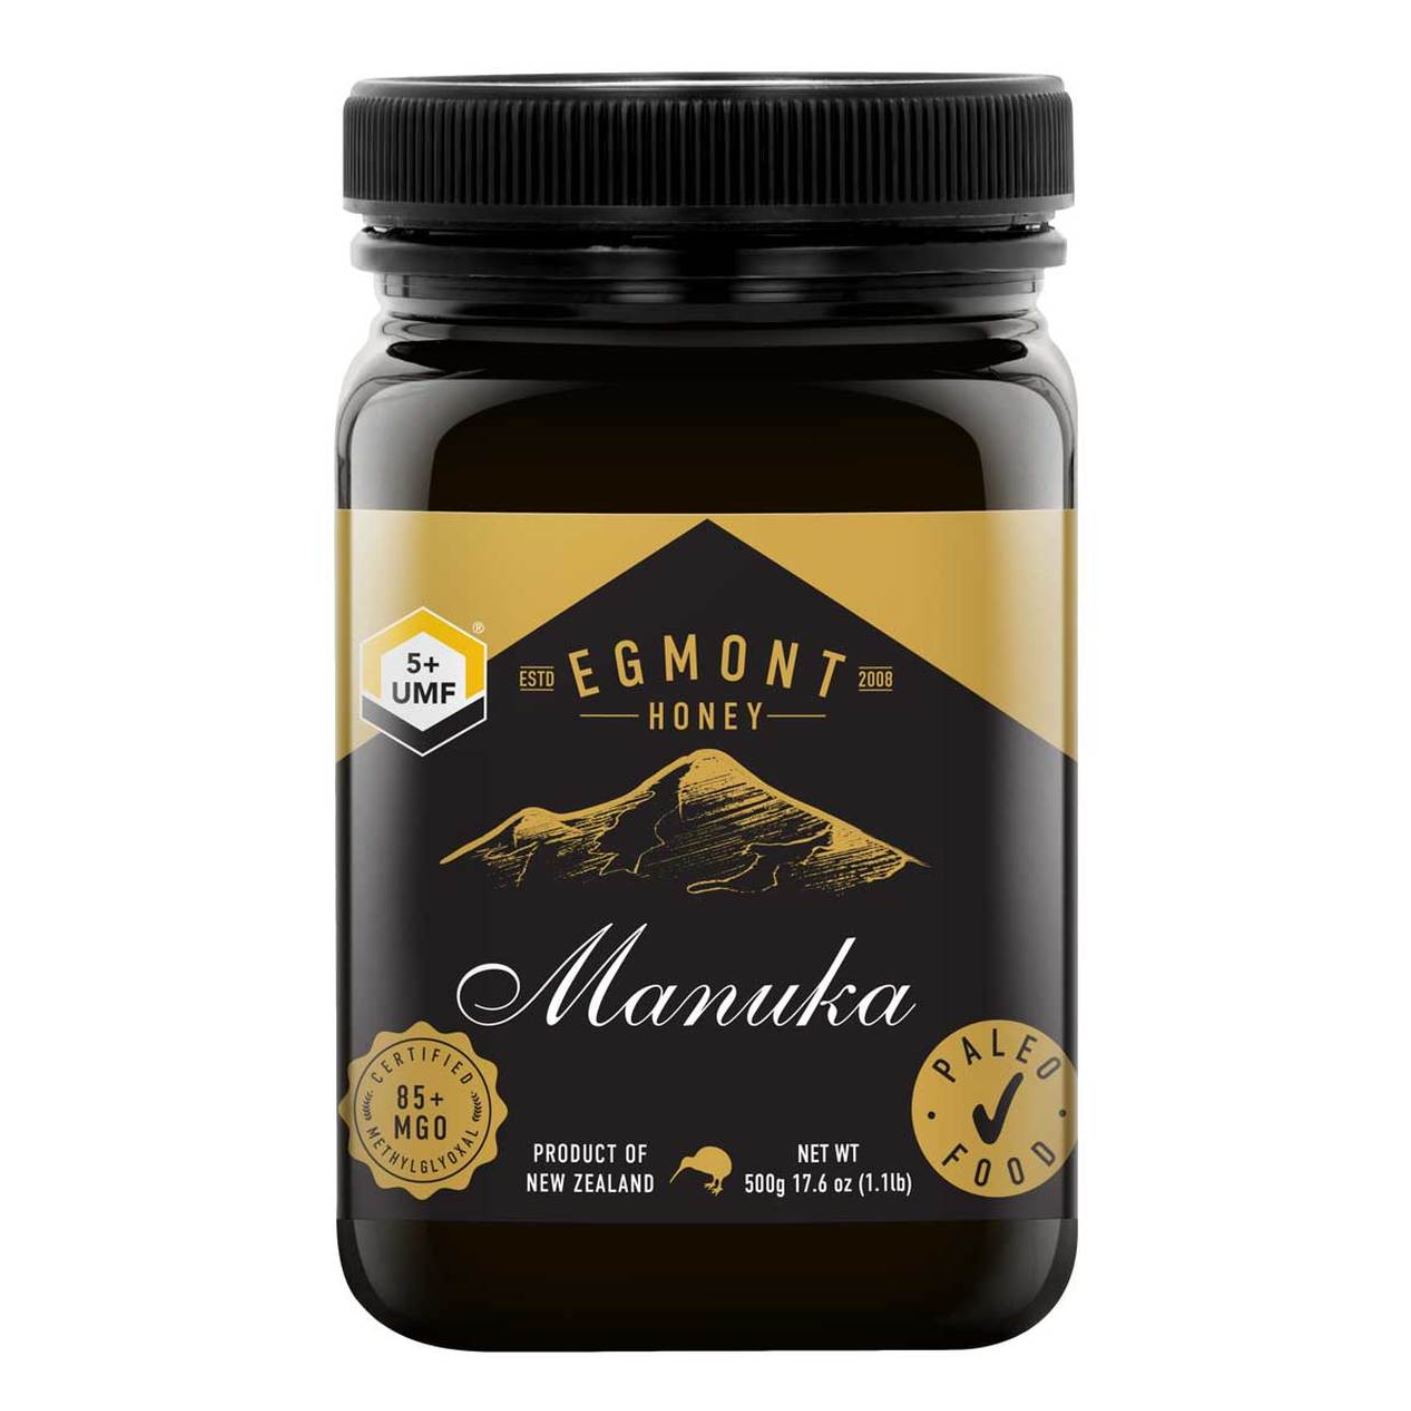 5+ UMF Manuka Honey